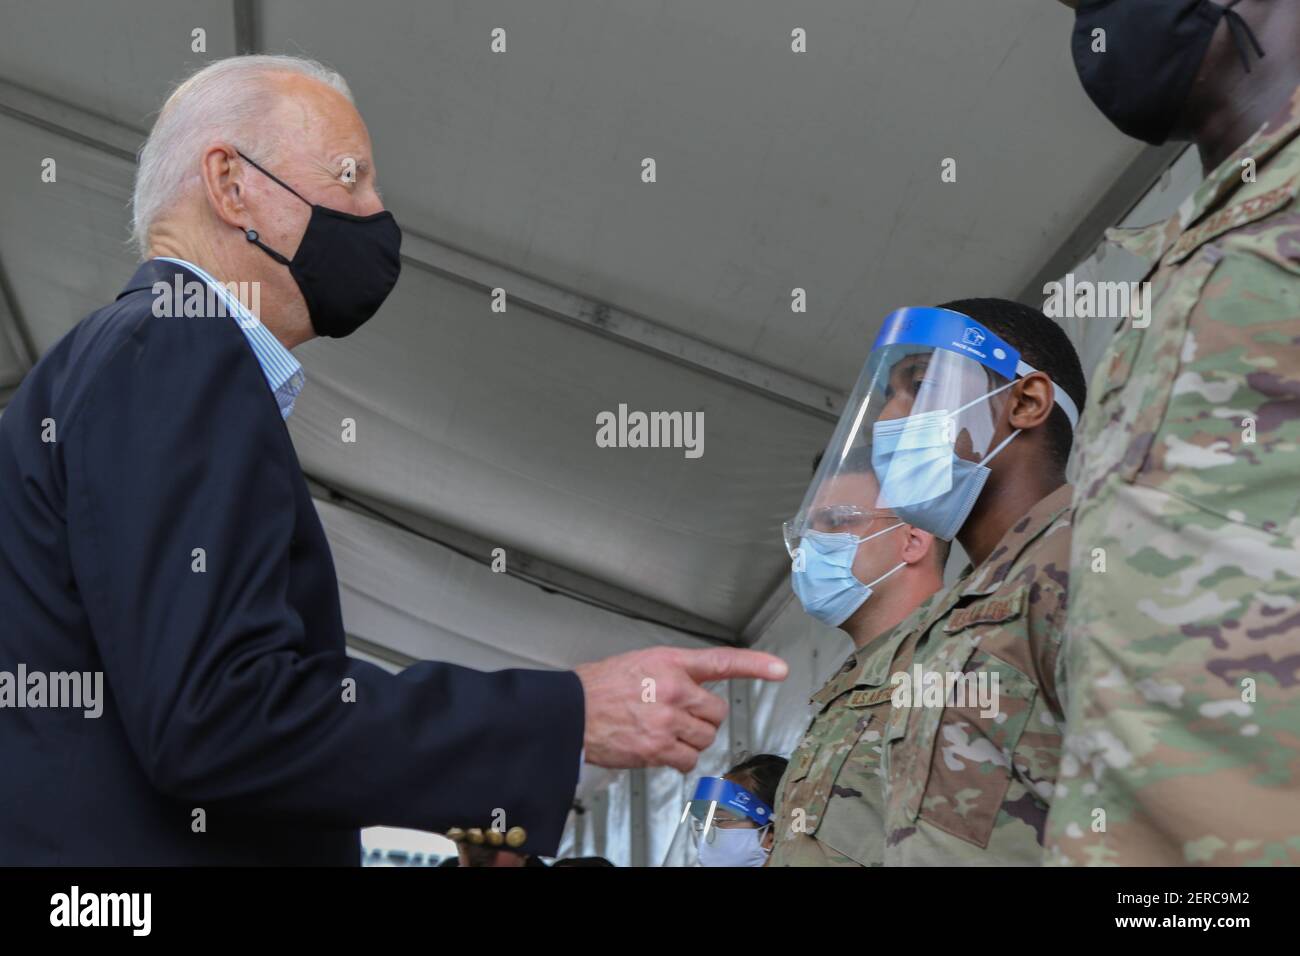 Joe Biden, président des États-Unis, discute avec des aviateurs de la U.S. Air Force lors d'une visite au centre de vaccination communautaire COVID-19, financé par le gouvernement fédéral, au stade NRG, le 26 février 2021, à Houston, au Texas. Banque D'Images